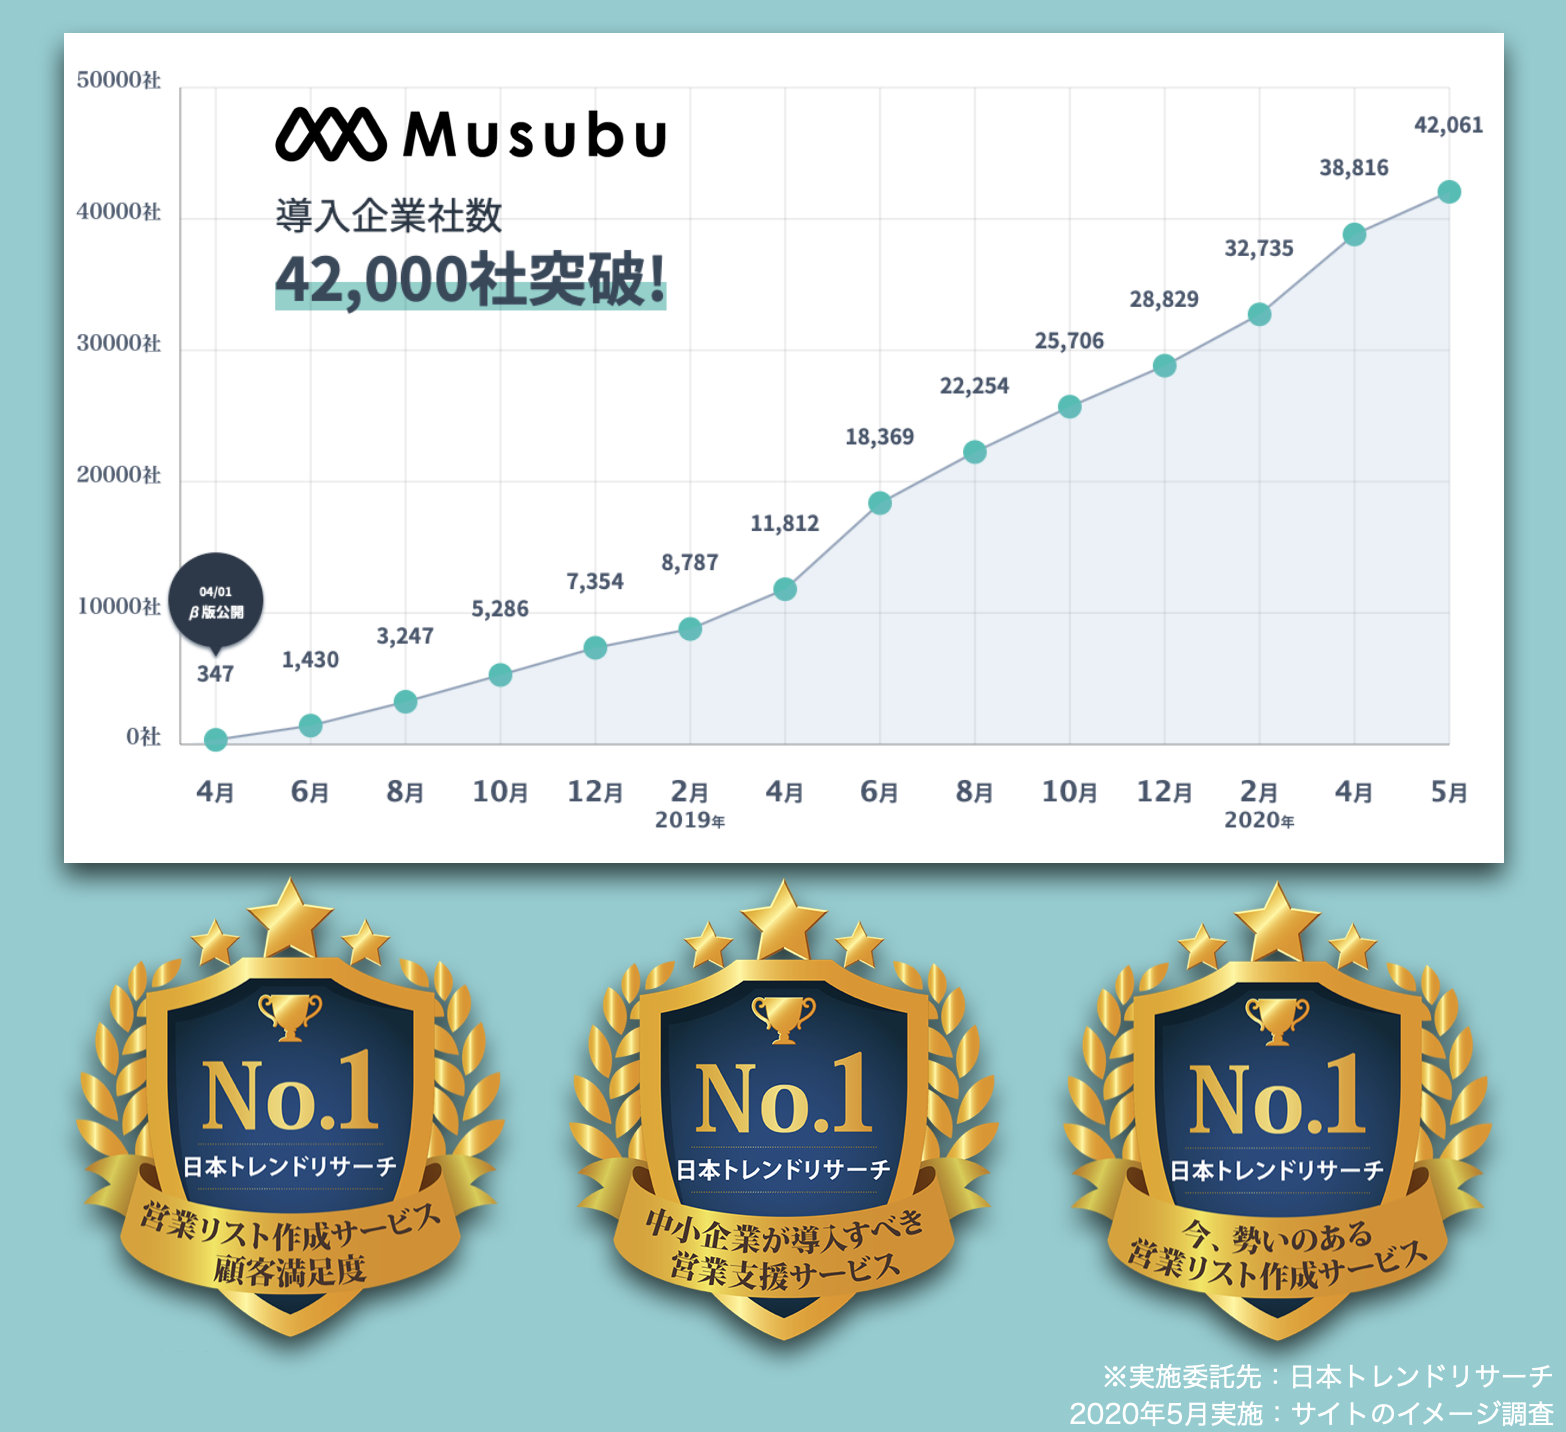 【営業リスト作成サービス 顧客満足度No.1】など、クラウド型企業情報データベース「Musubu」が3部門で ...